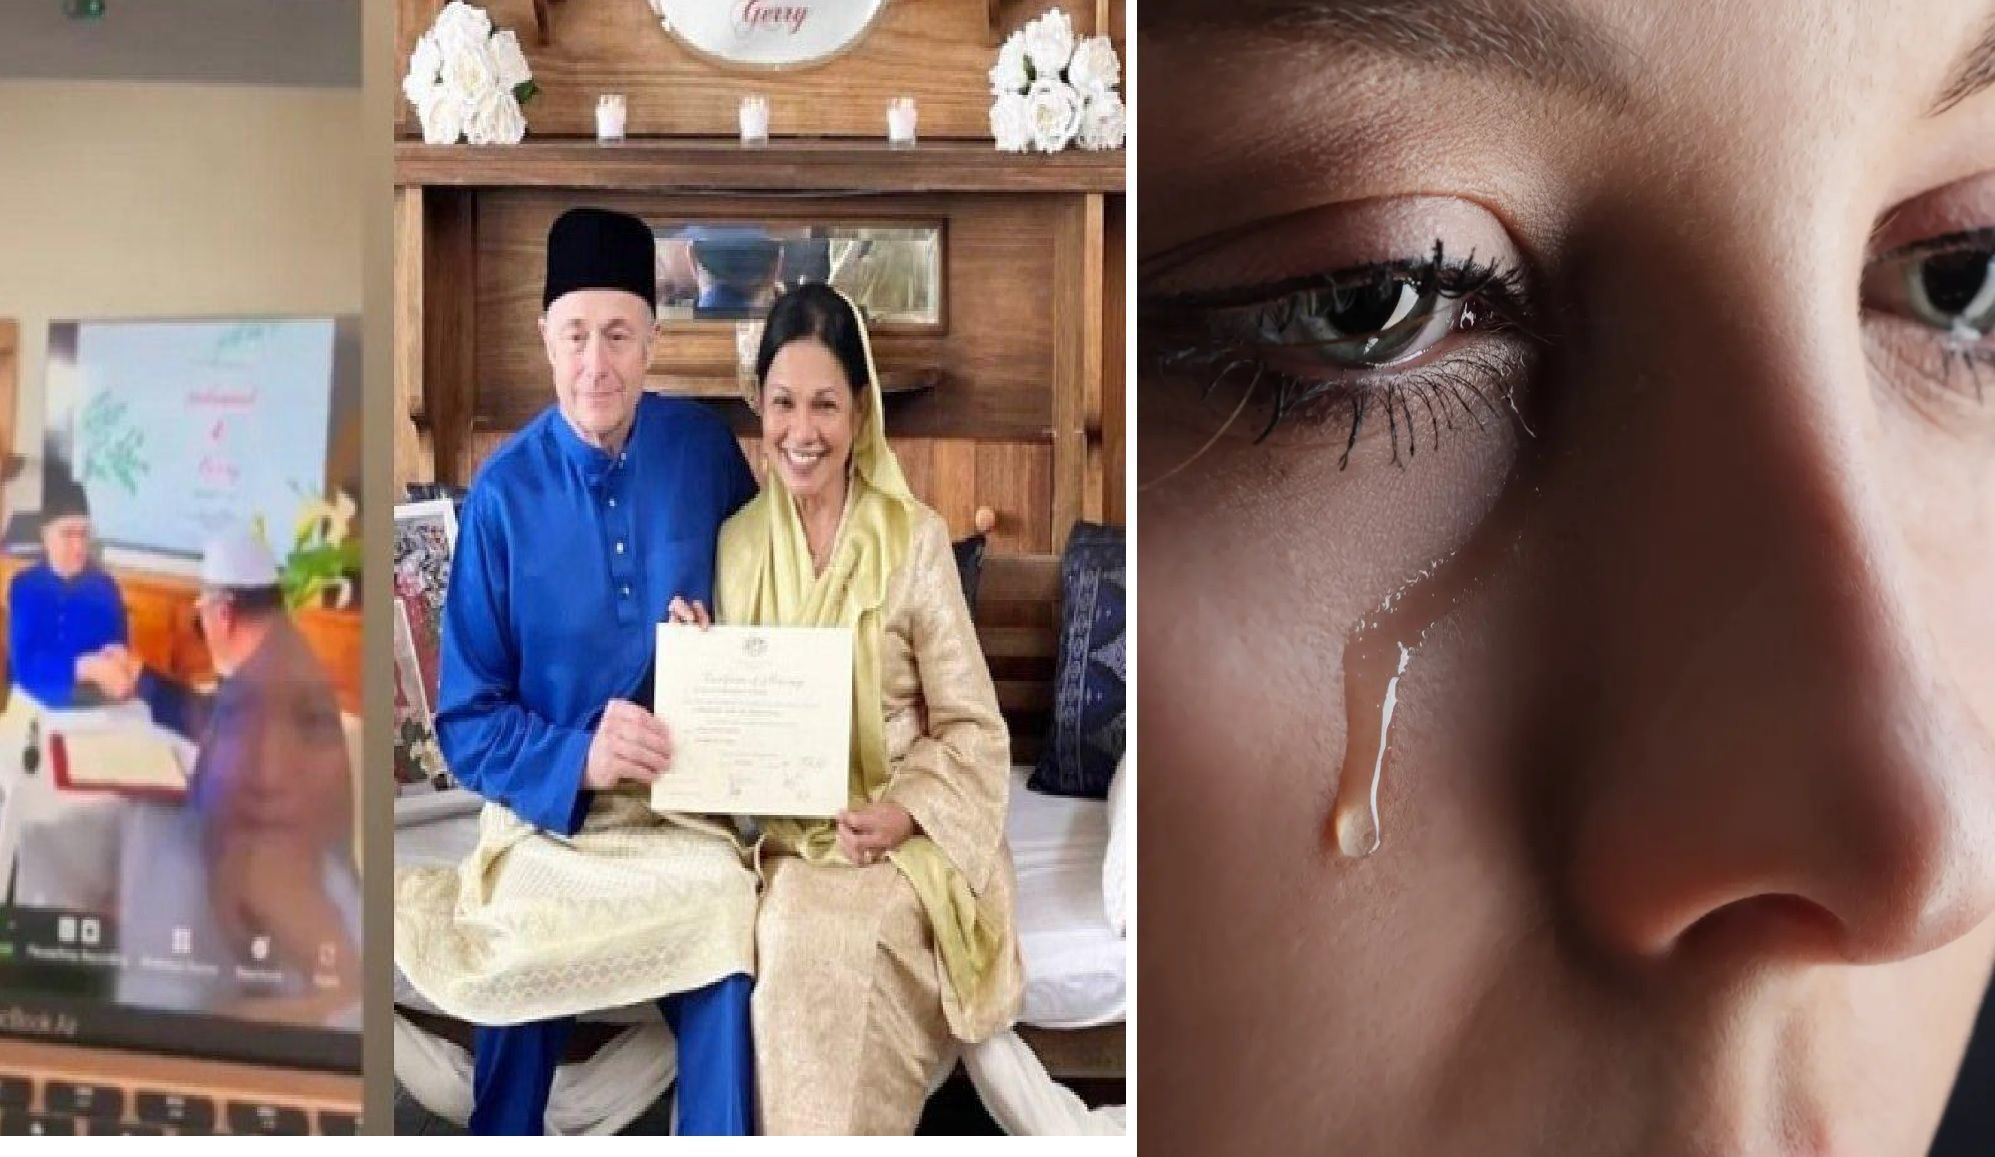 Baru bahagia setelah 31 tahun menjanda, artis senior ini kembali menangis pilu, suami baru dua bulan menikahinya meninggal dunia karena kanker. Kini menjanda lagi